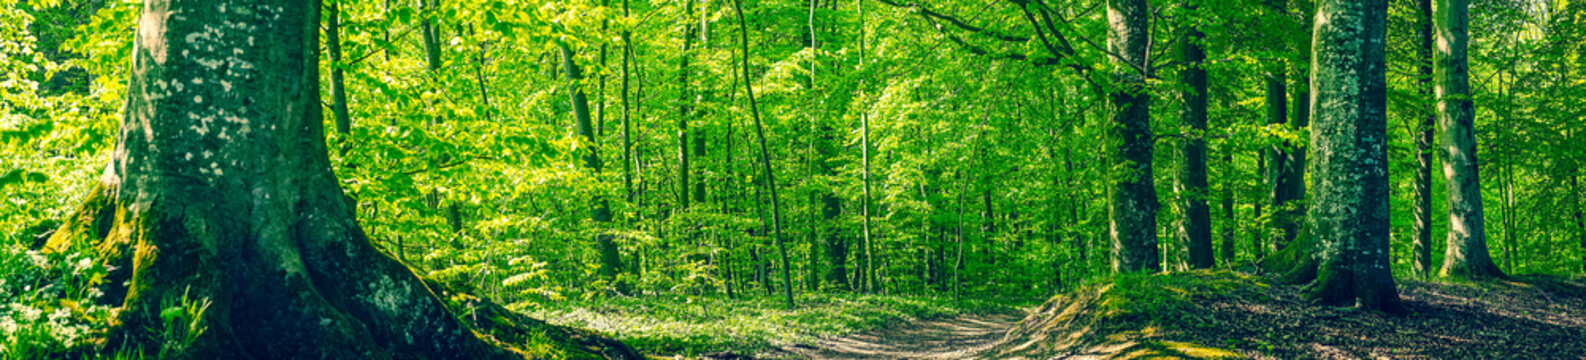 Fototapeta Bukowy las w scenerii panoramy